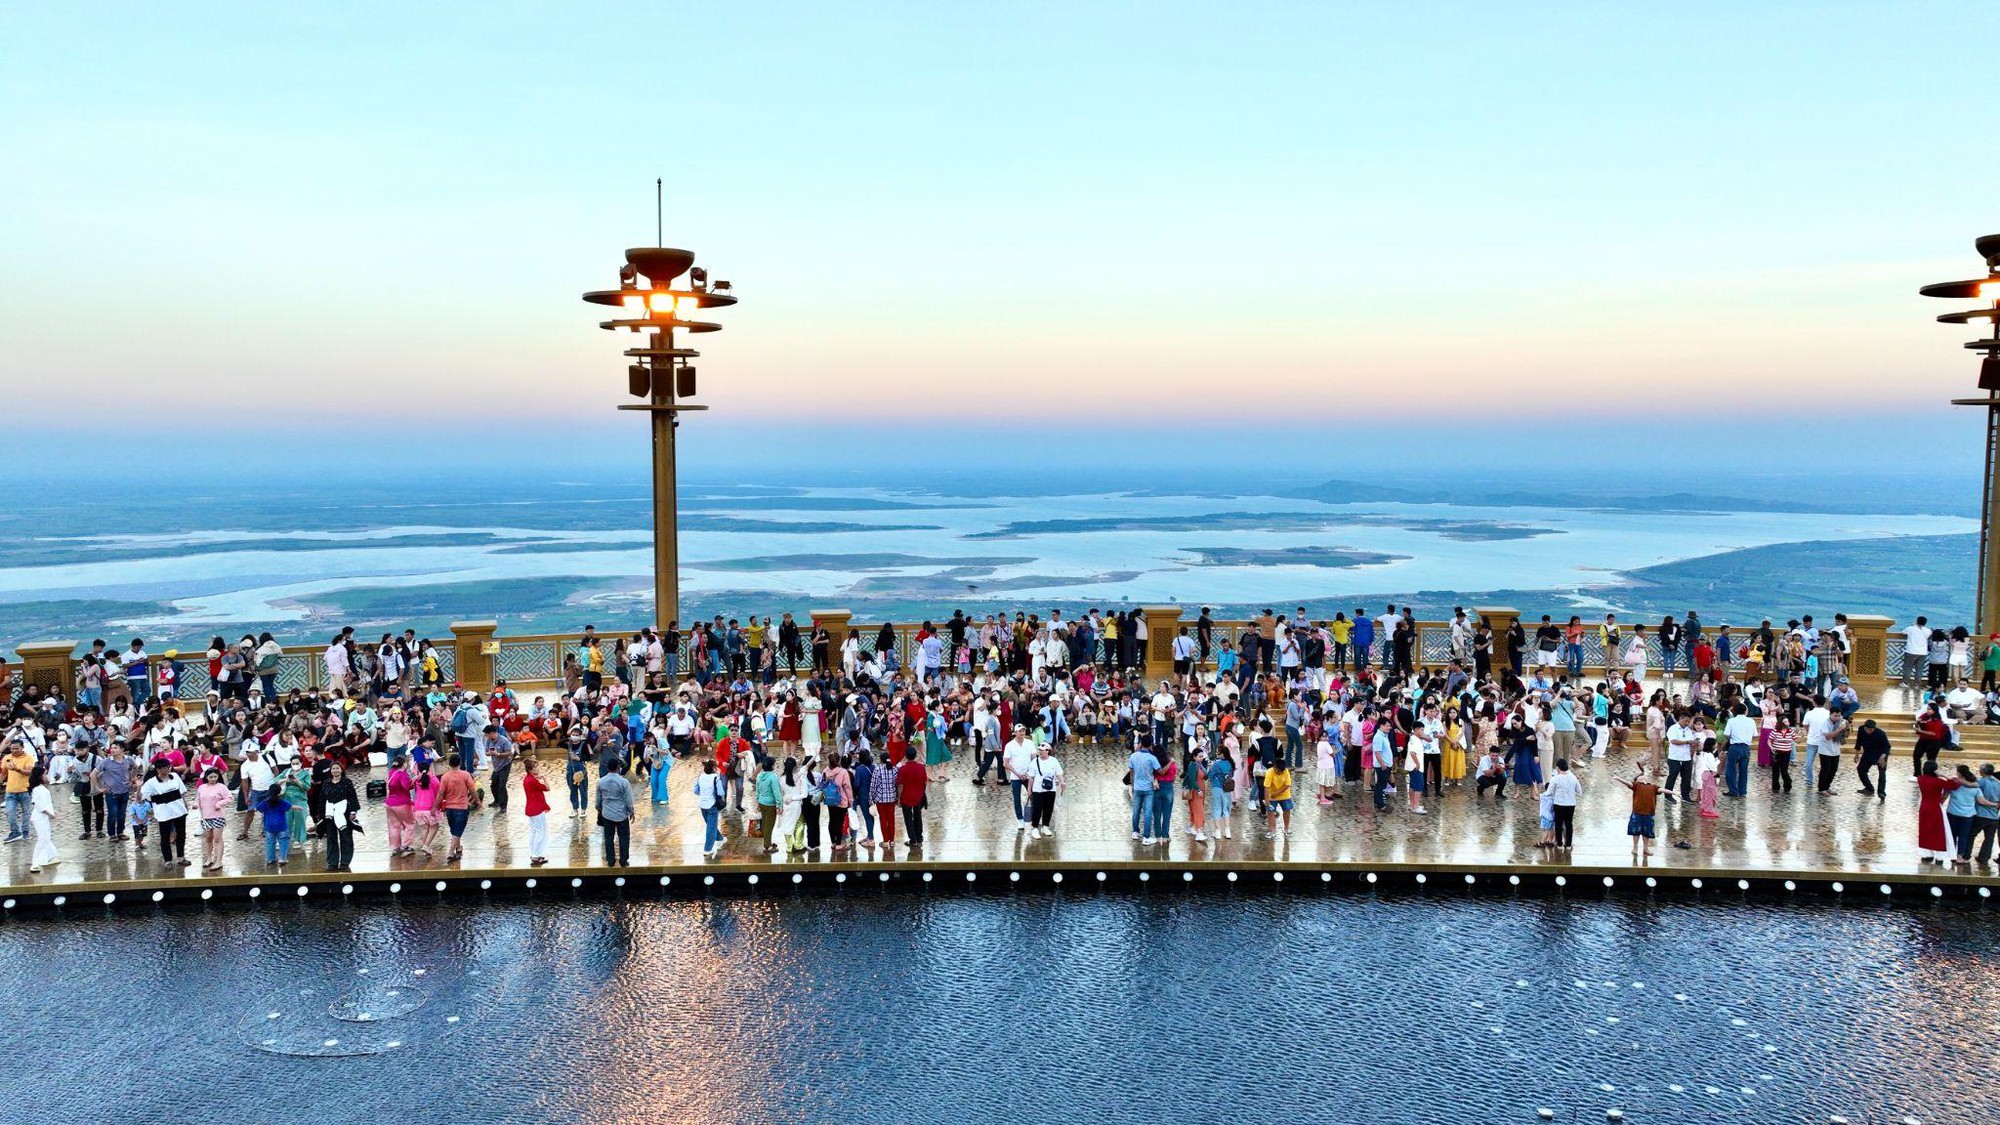 Mùng 4 Tết, hơn 150 nghìn du khách đi cáp treo lên núi Bà Đen hành hương- Ảnh 3.